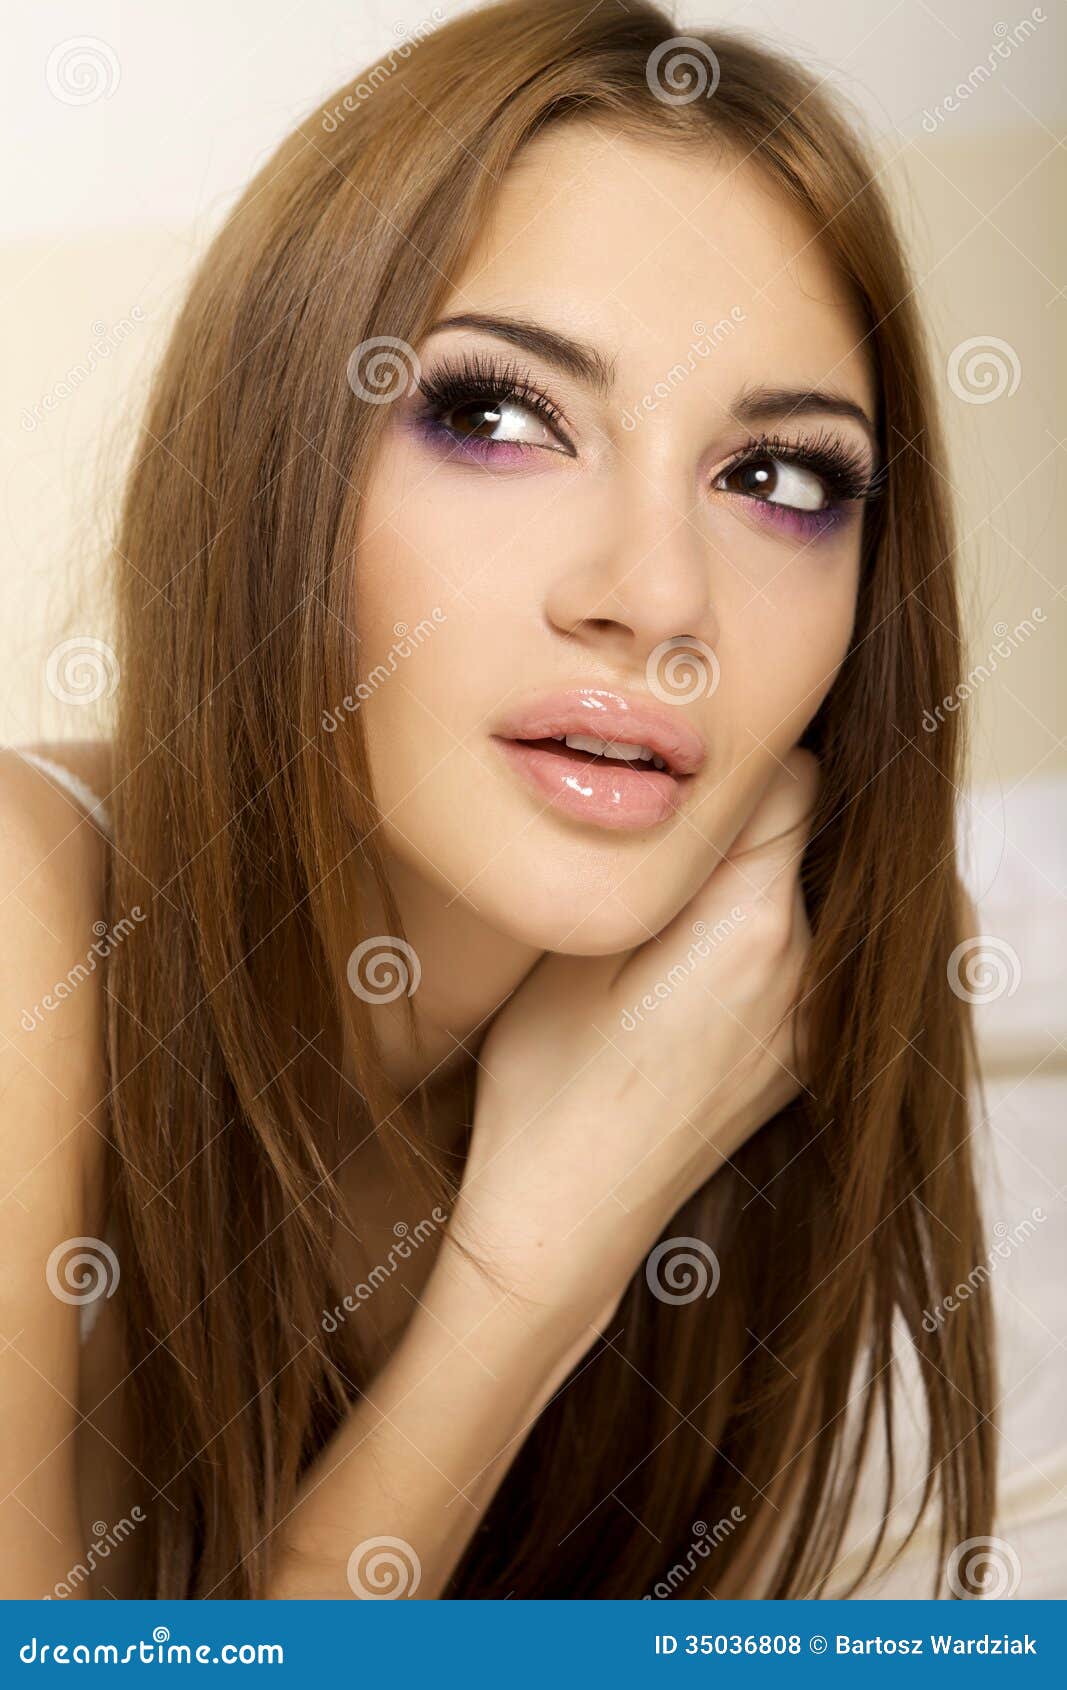 Beautiful Adult Sensuality Woman Stock Photo - Image of portrait ...